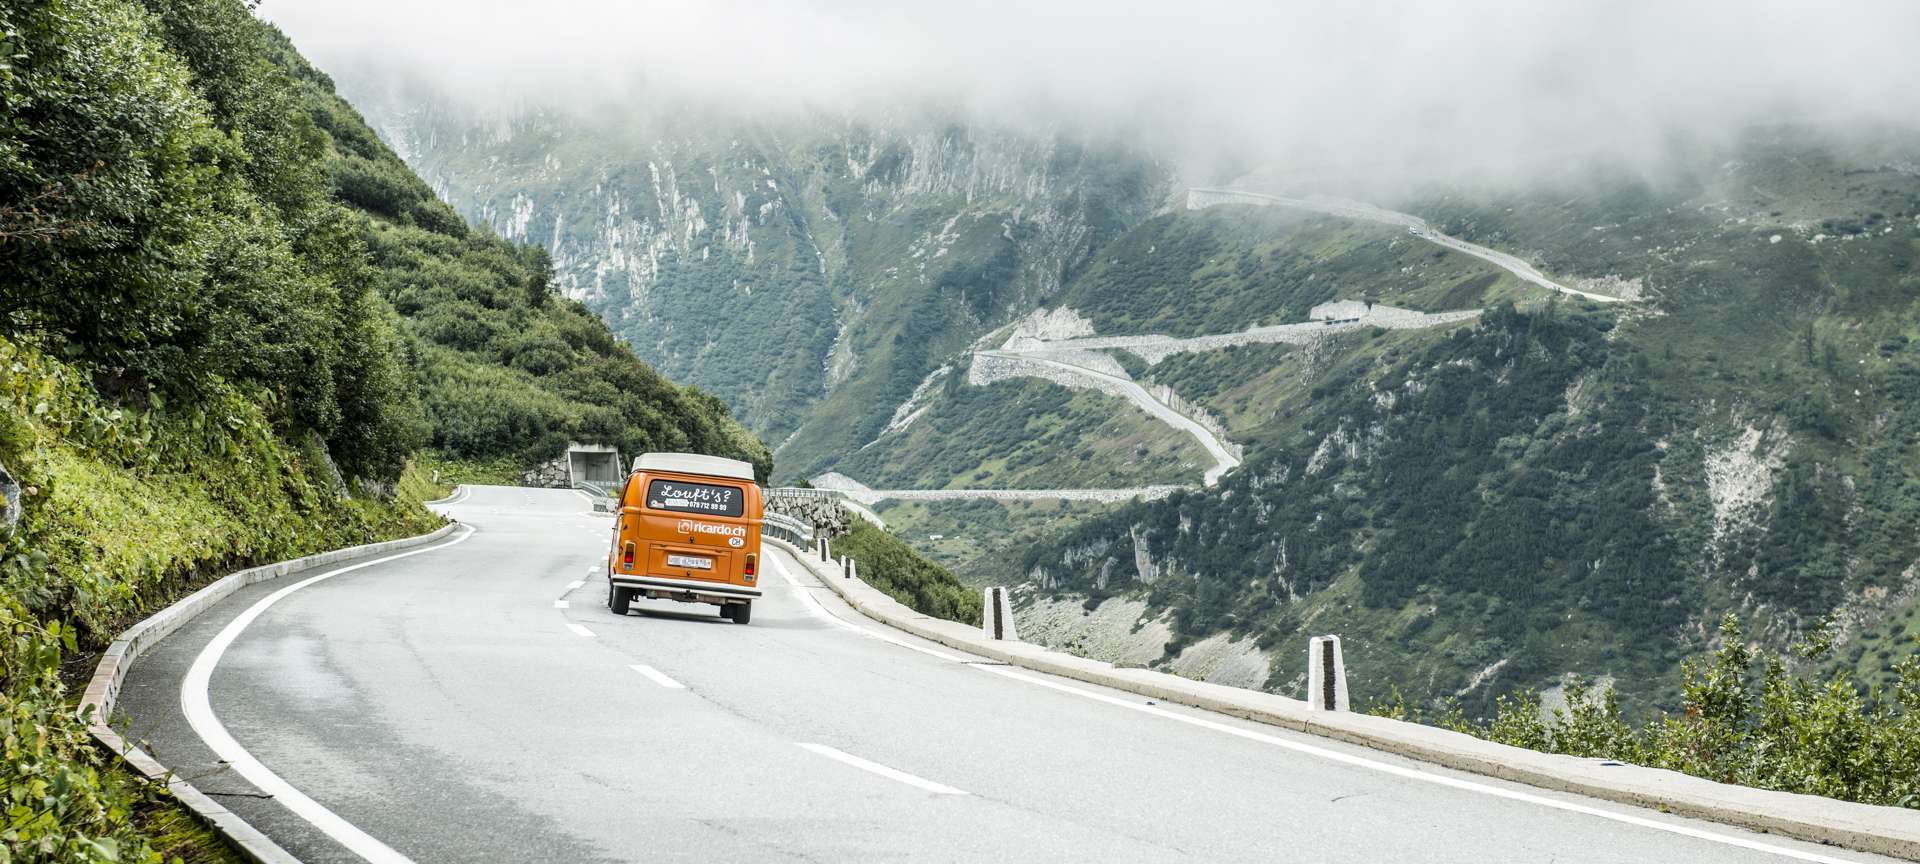 Passage de col, bus VW de location avec inscriptions à l'arrière dans montagnes suisses